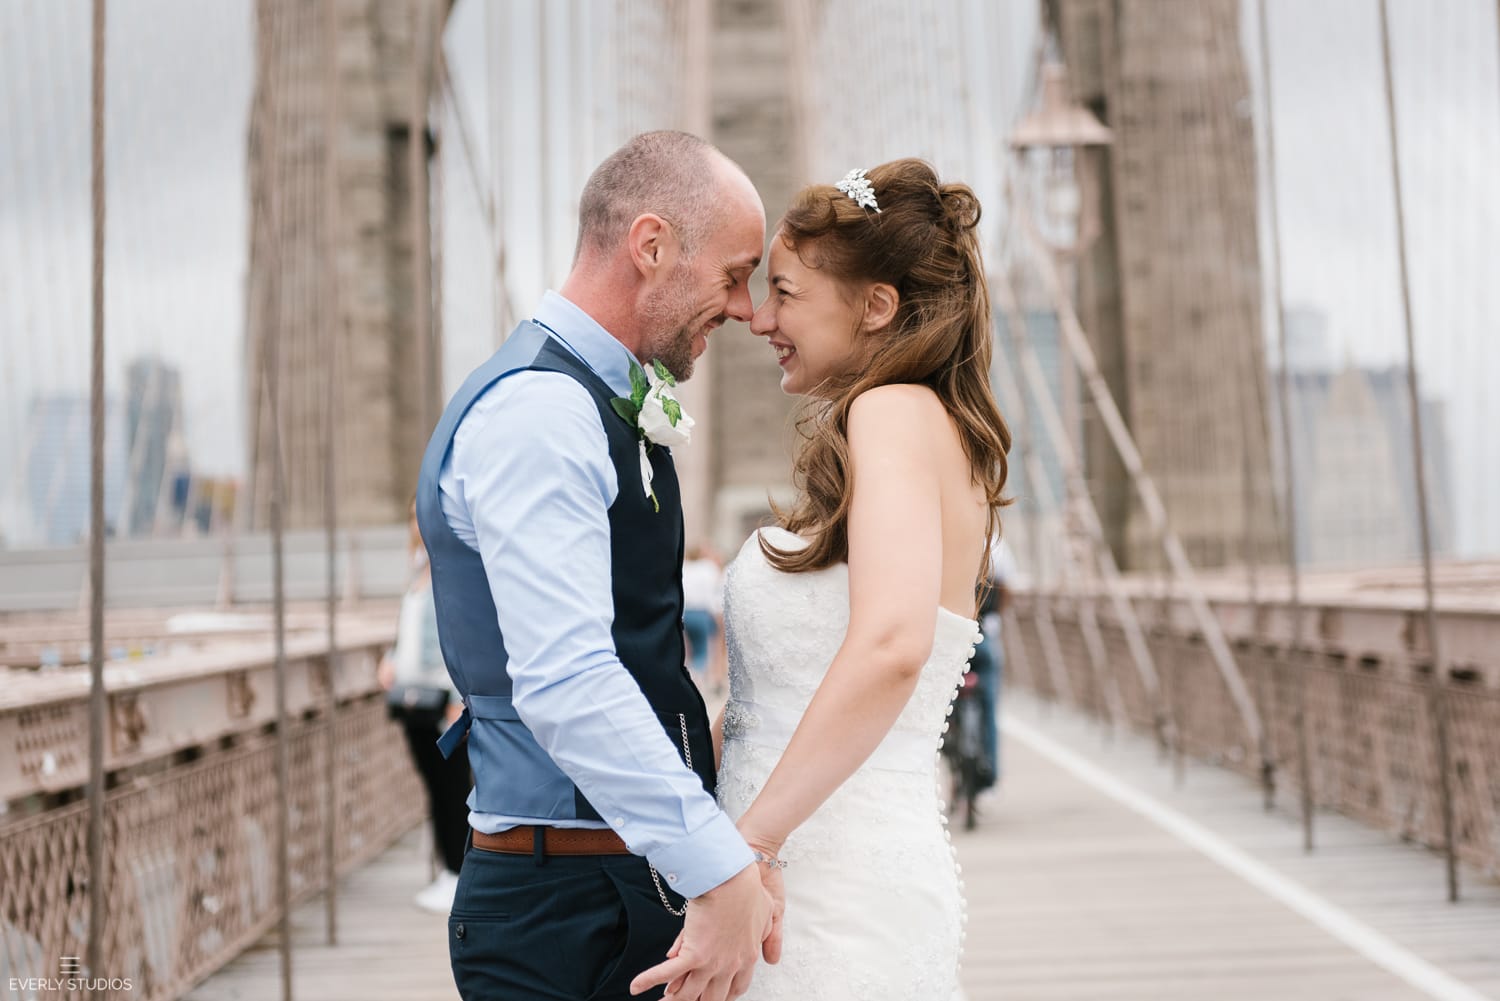 Brooklyn Bridge wedding photos in Brooklyn. Photos by Brooklyn wedding photographer Everly Studios, www.everlystudios.com